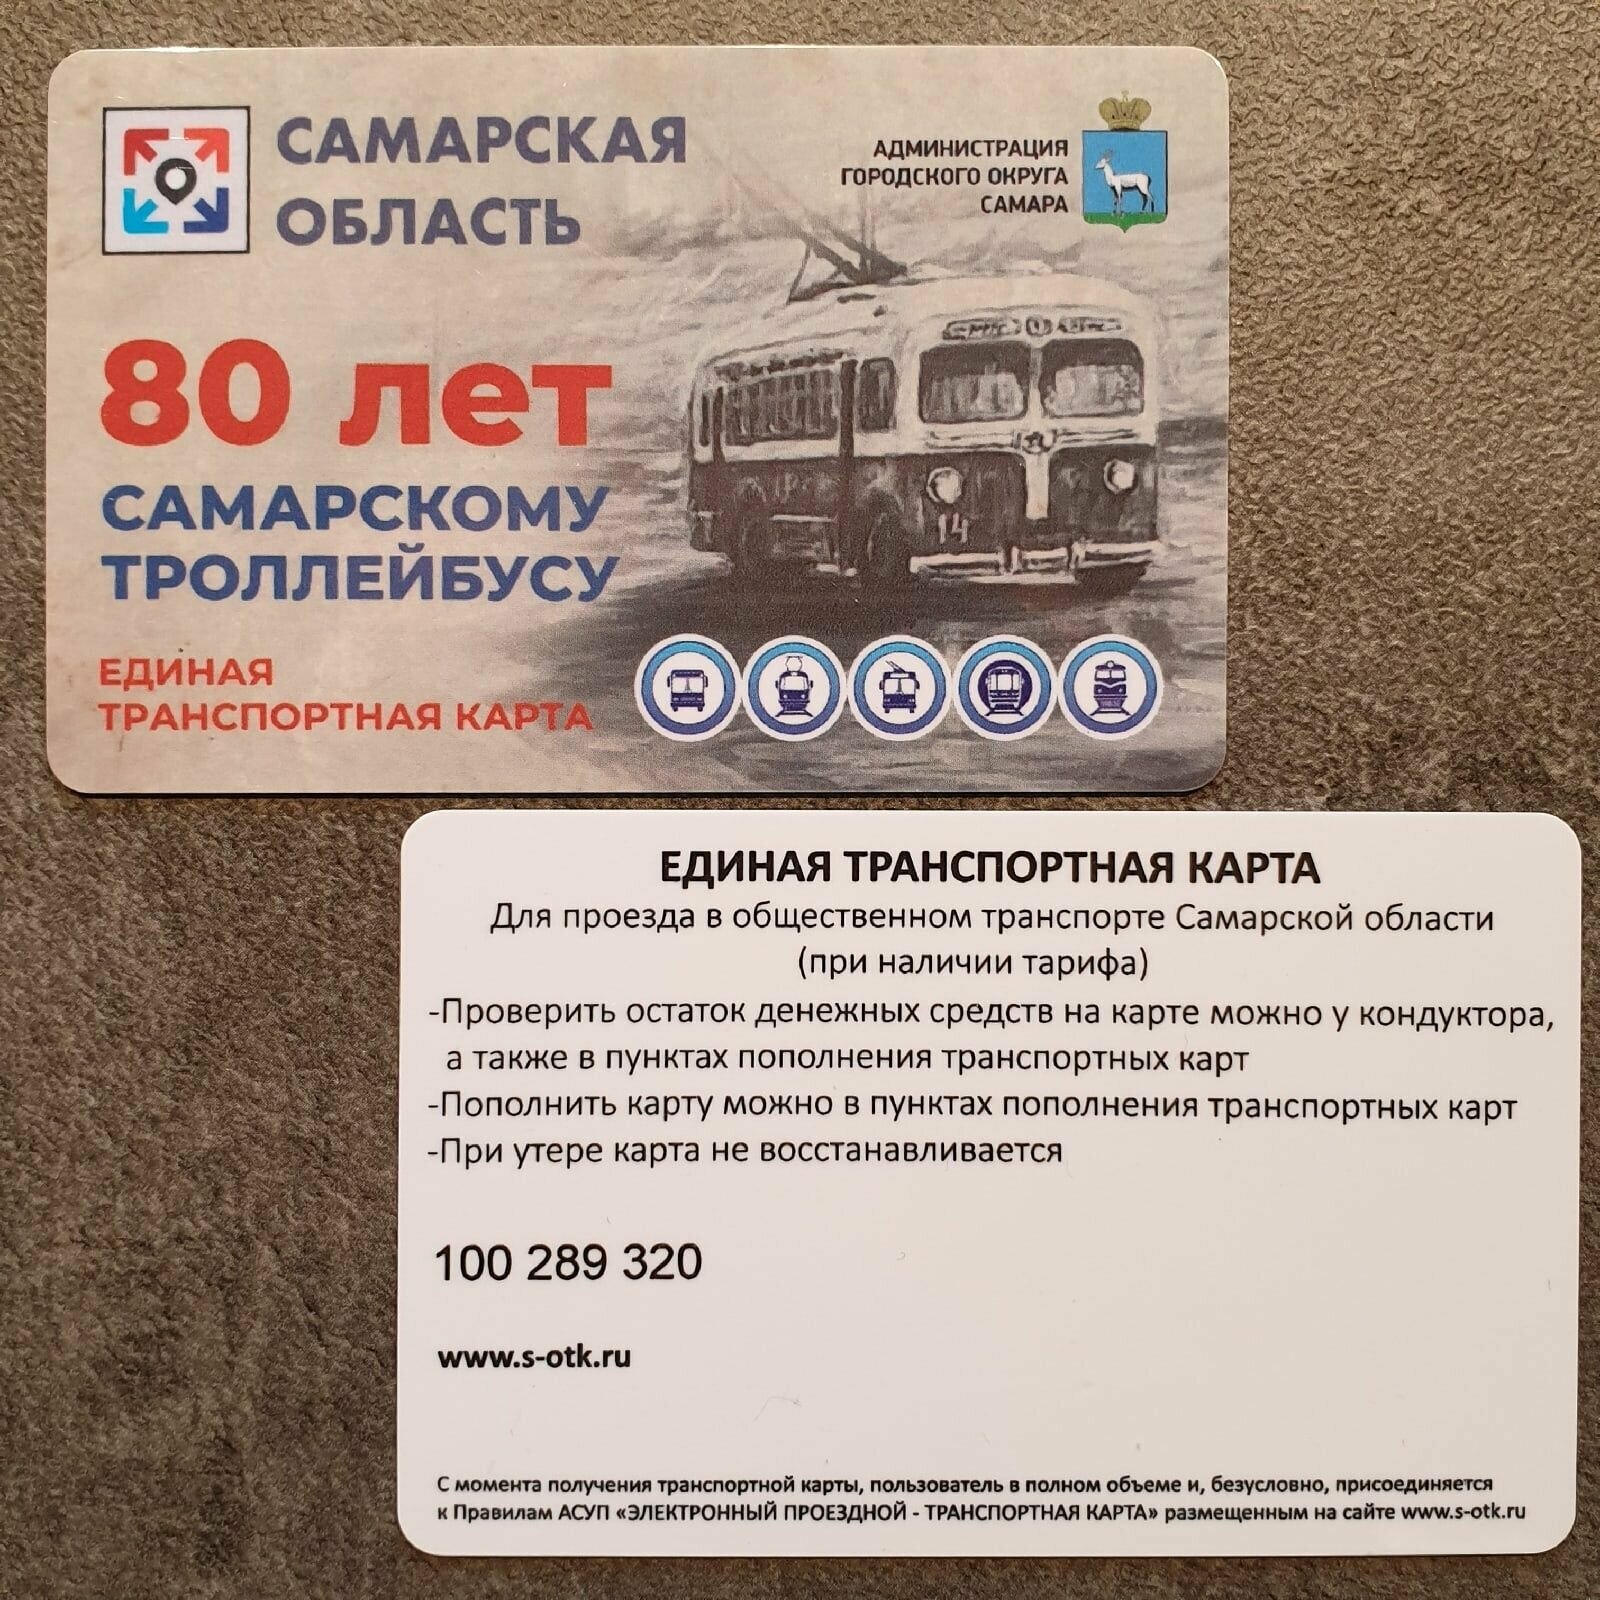 Транспортная карта метро и наземного транспорта Самарской области (Самара) - 80 лет троллейбусу. Лимитированный эксклюзивный дизайн